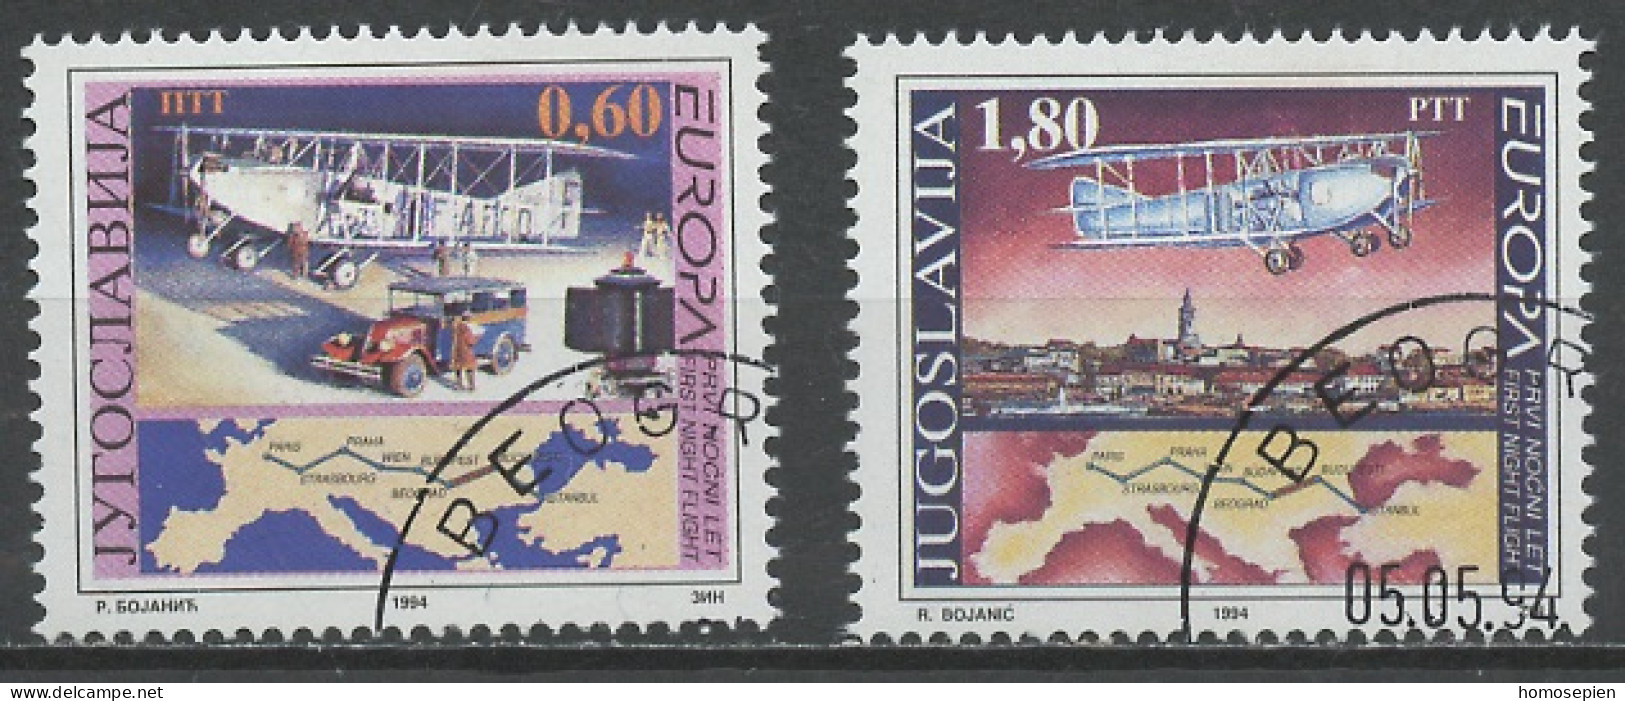 Europa CEPT 1994 Yougoslavie - Jugoslawien - Yugoslavia Y&T N°2517 à 2518 - Michel N°2657 à 2658 (o) - 1994